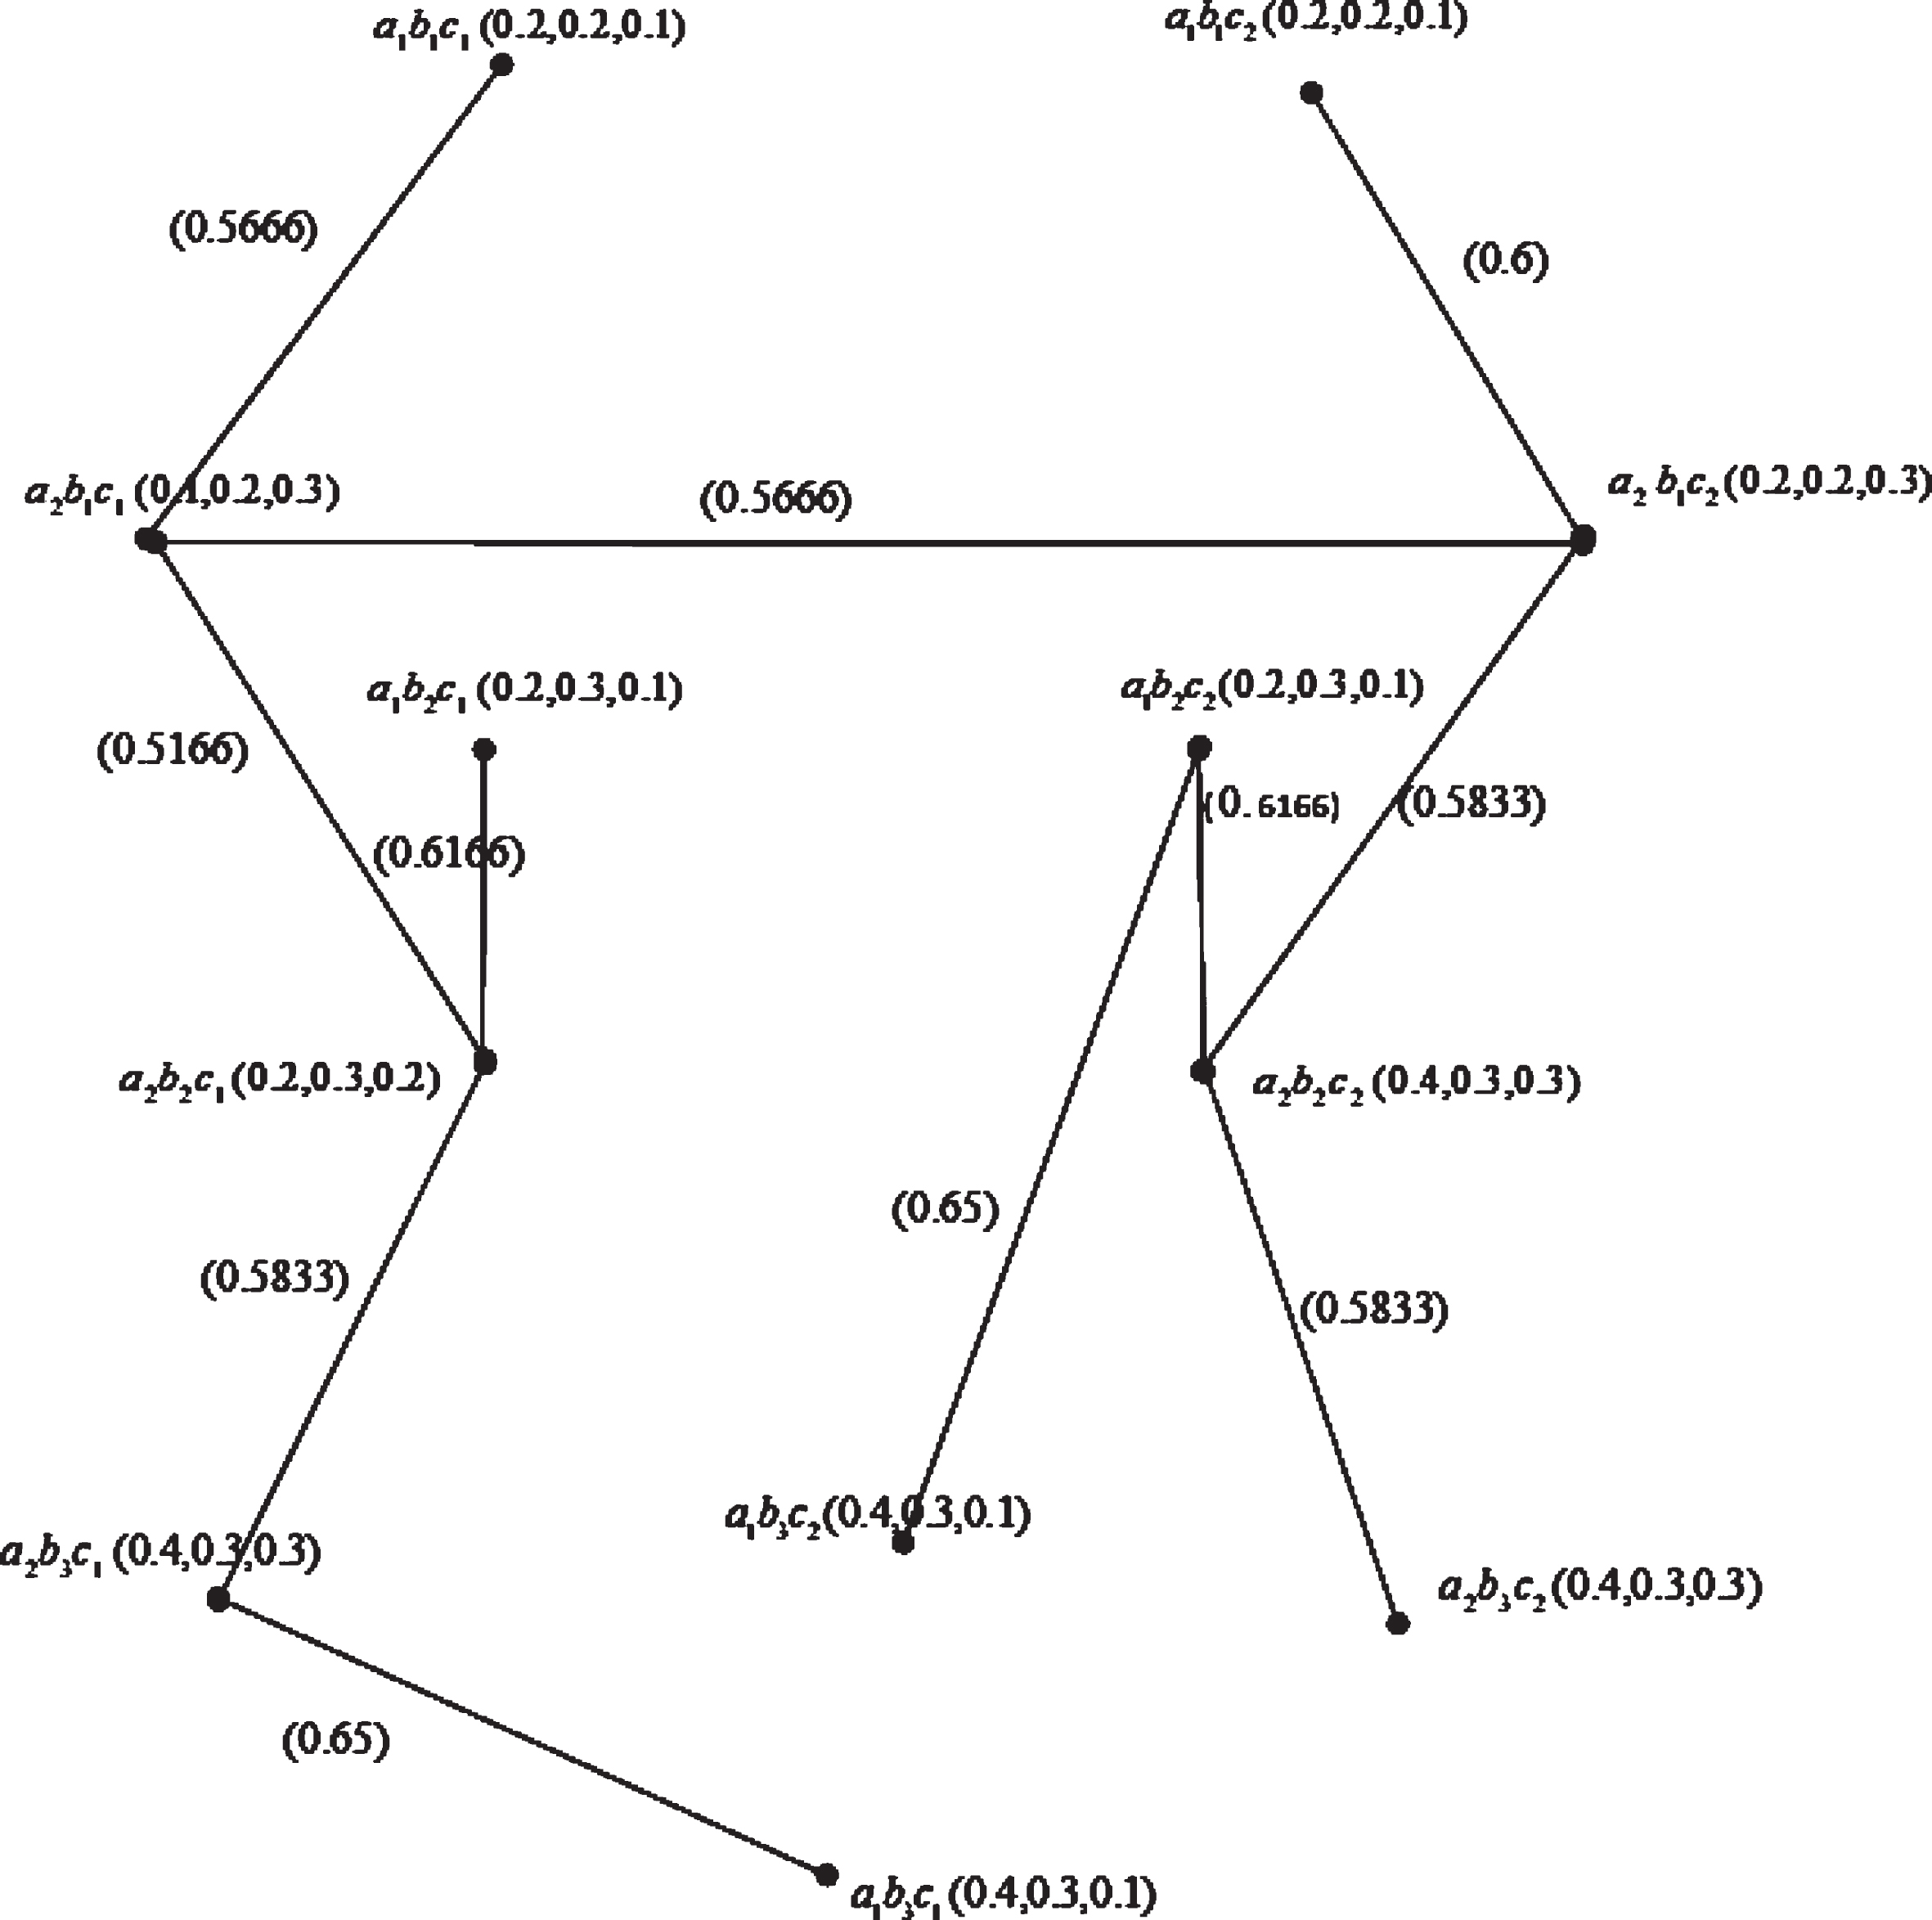 Minimal spanning tree 
N1′*N2′*N3′
.